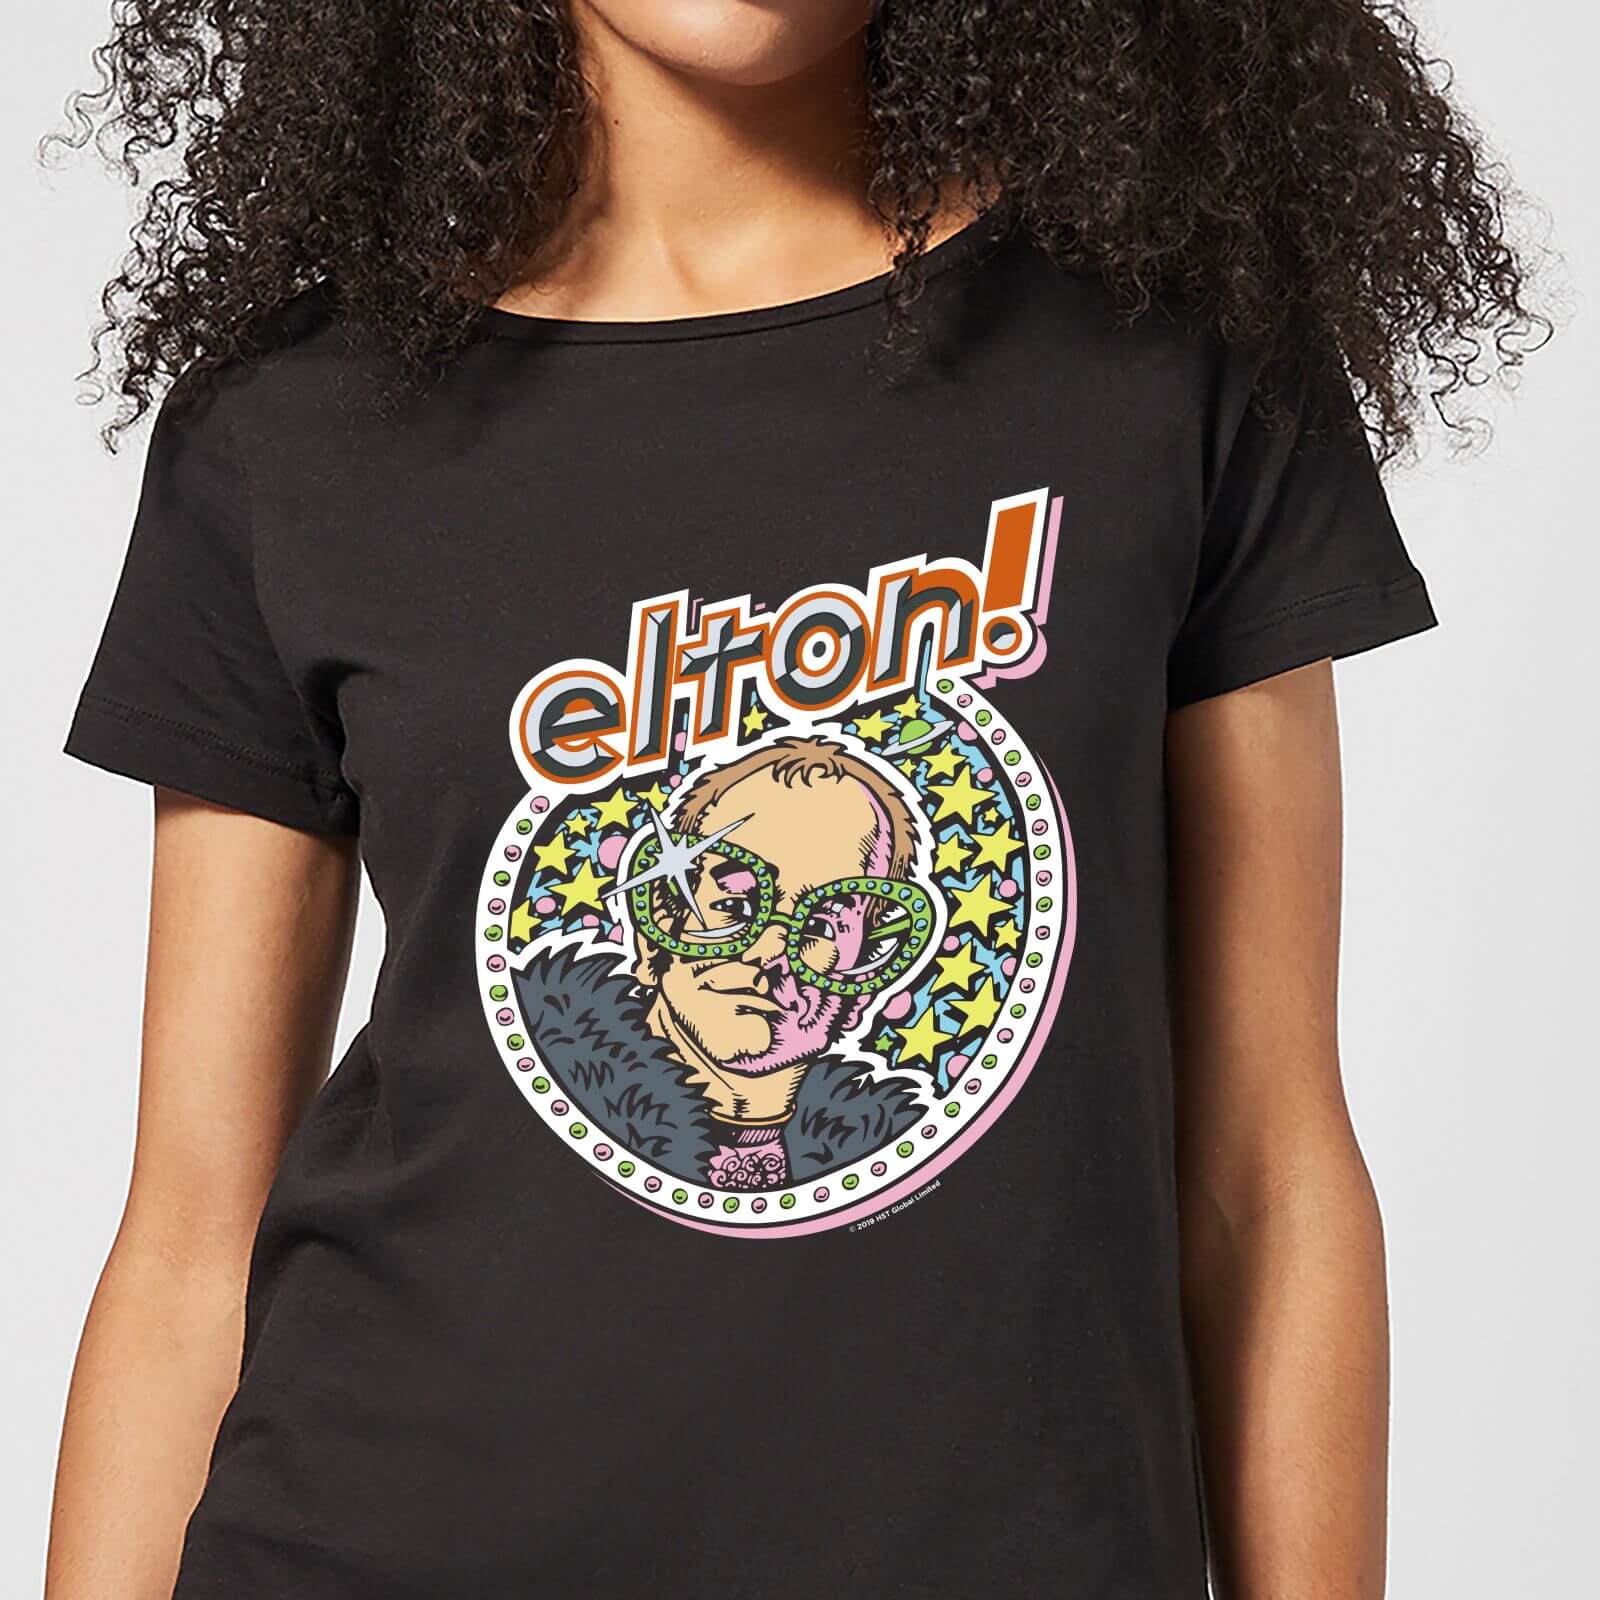 Elton John Star Women's T-Shirt - Black - M - Negro